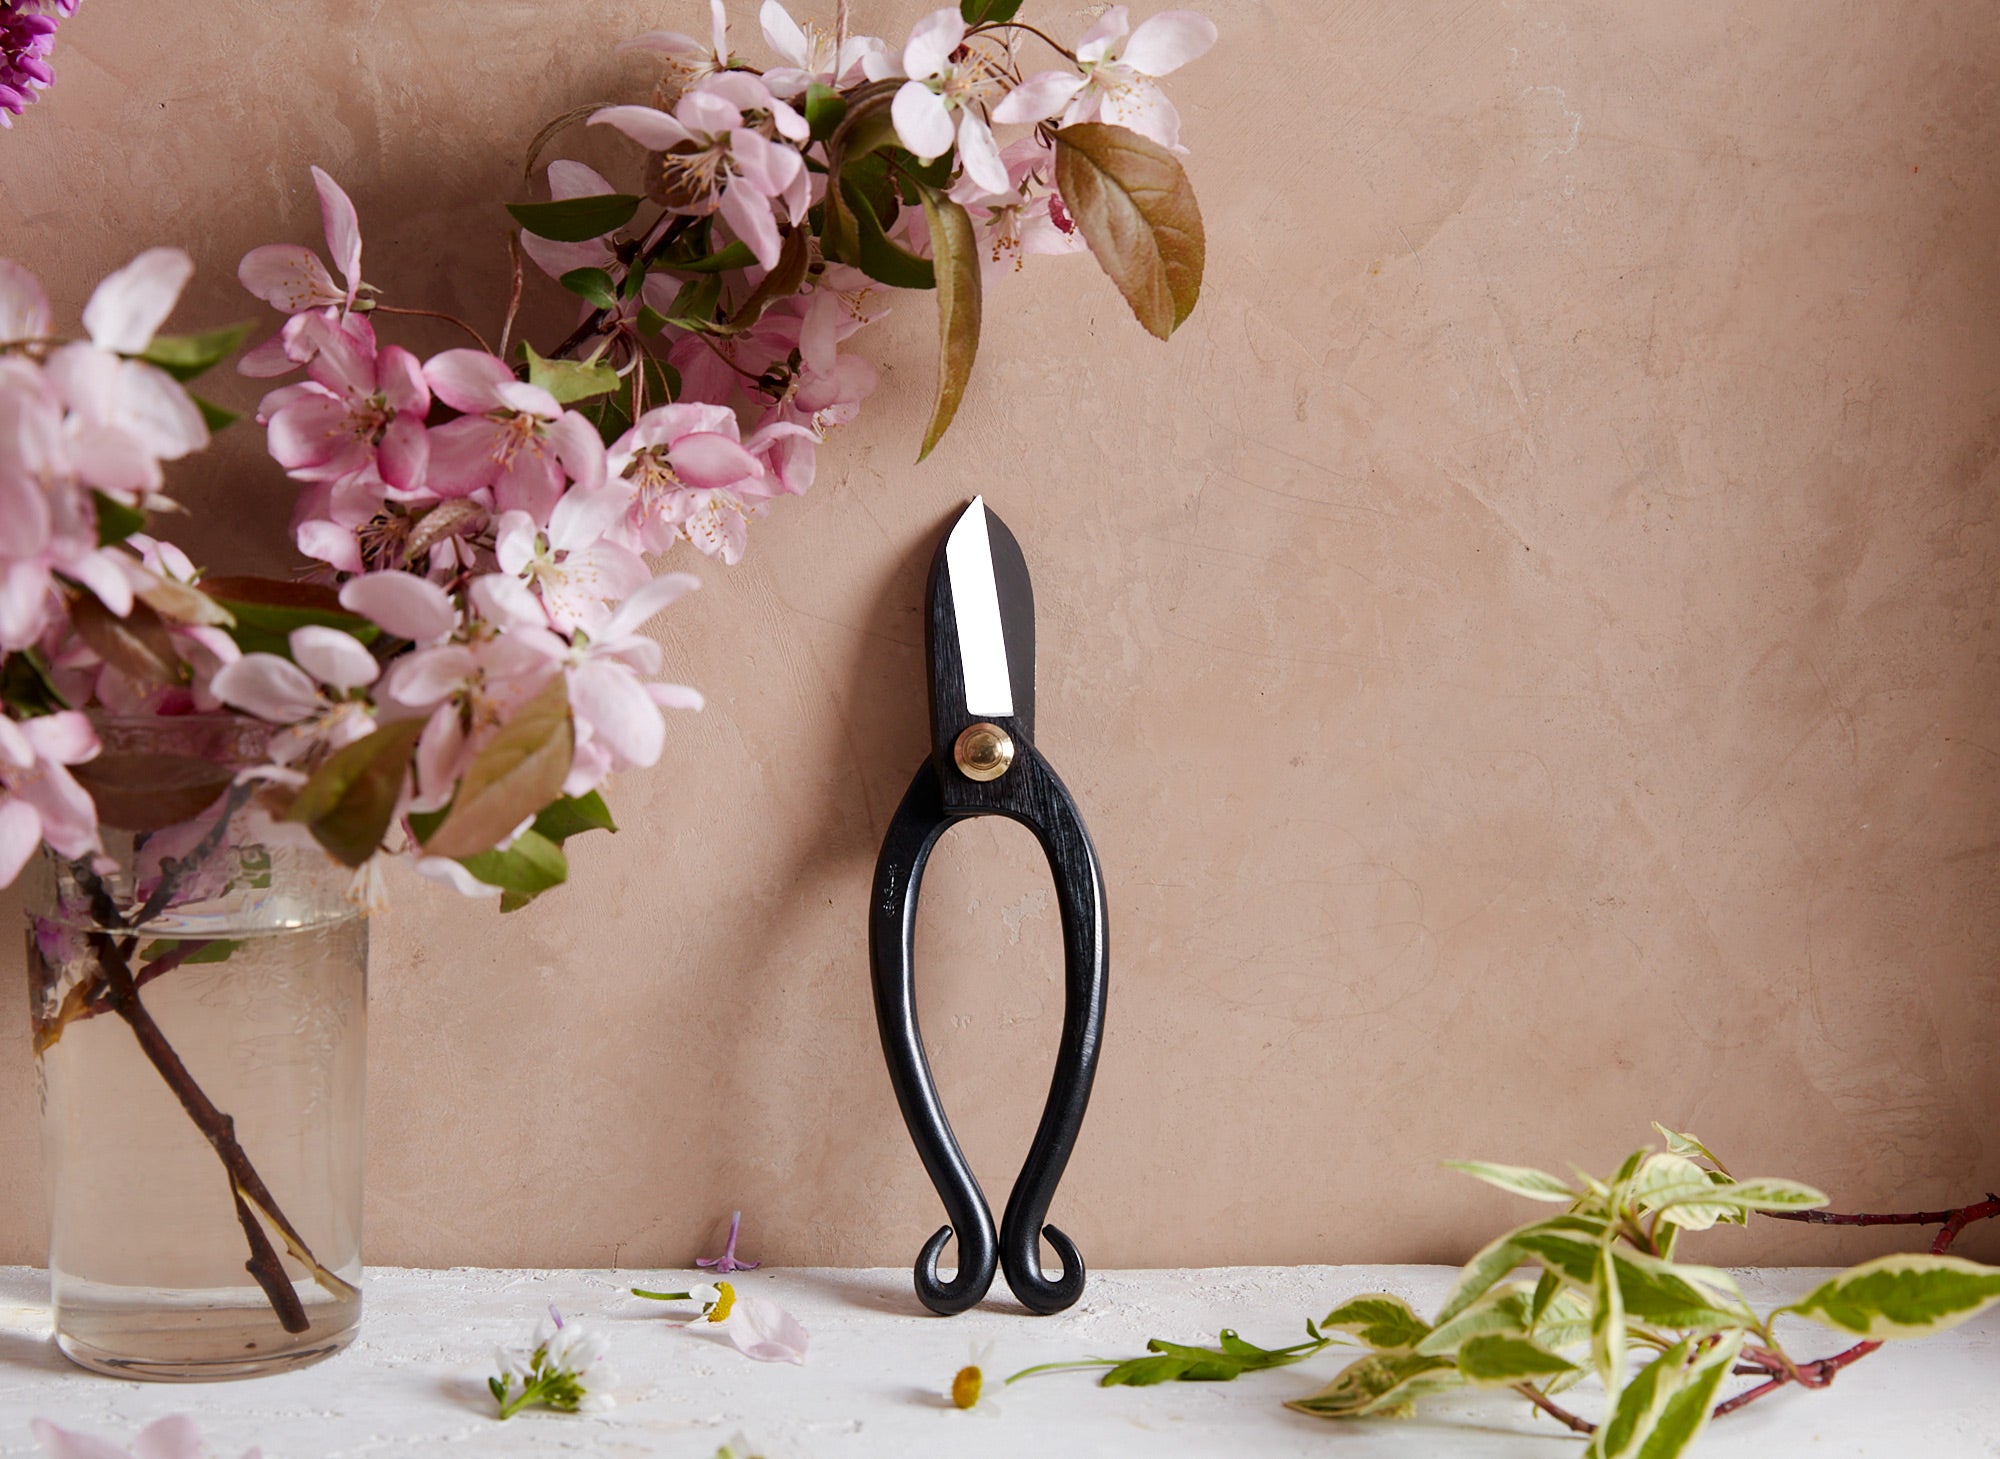 Japanese flower and household scissors